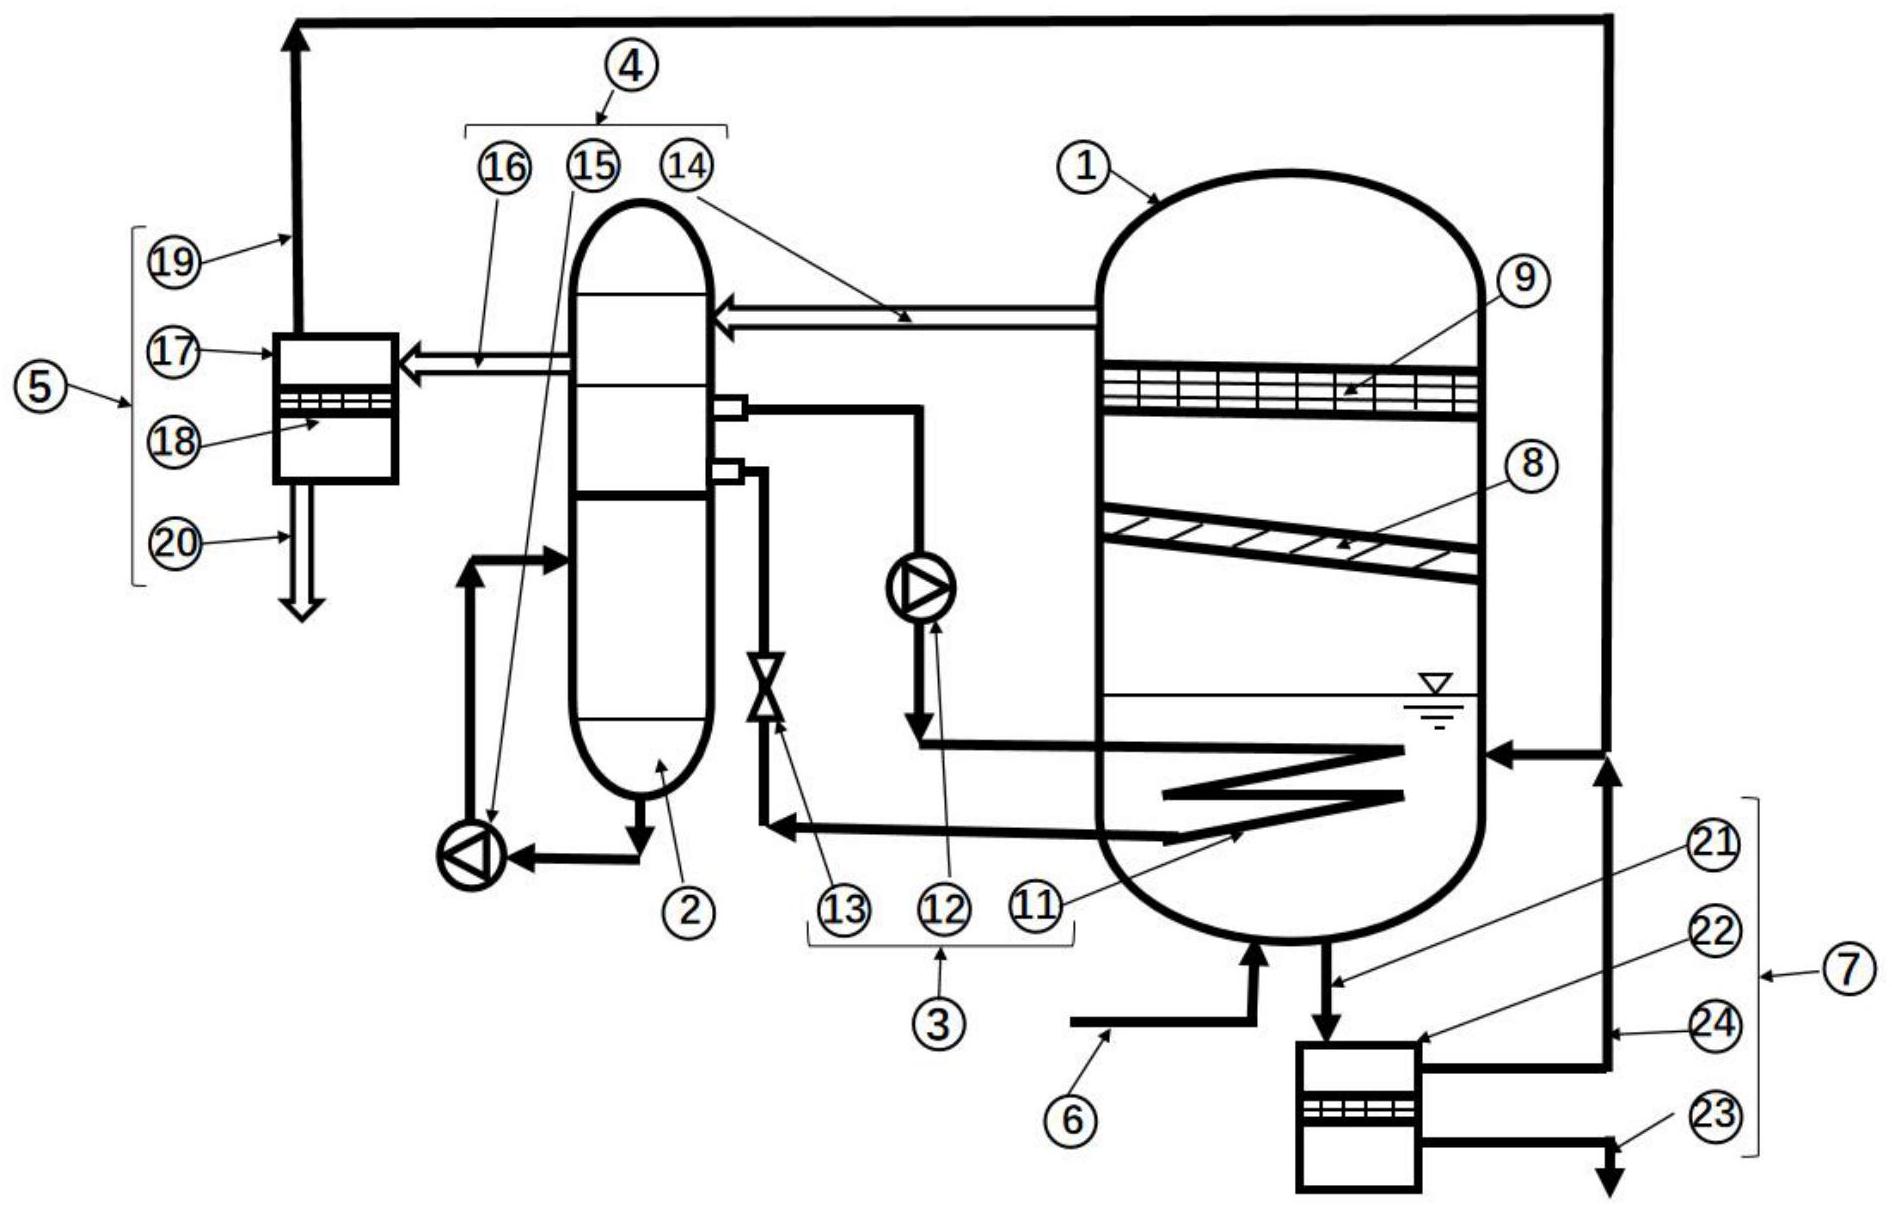 空调蒸发器原理图解图片